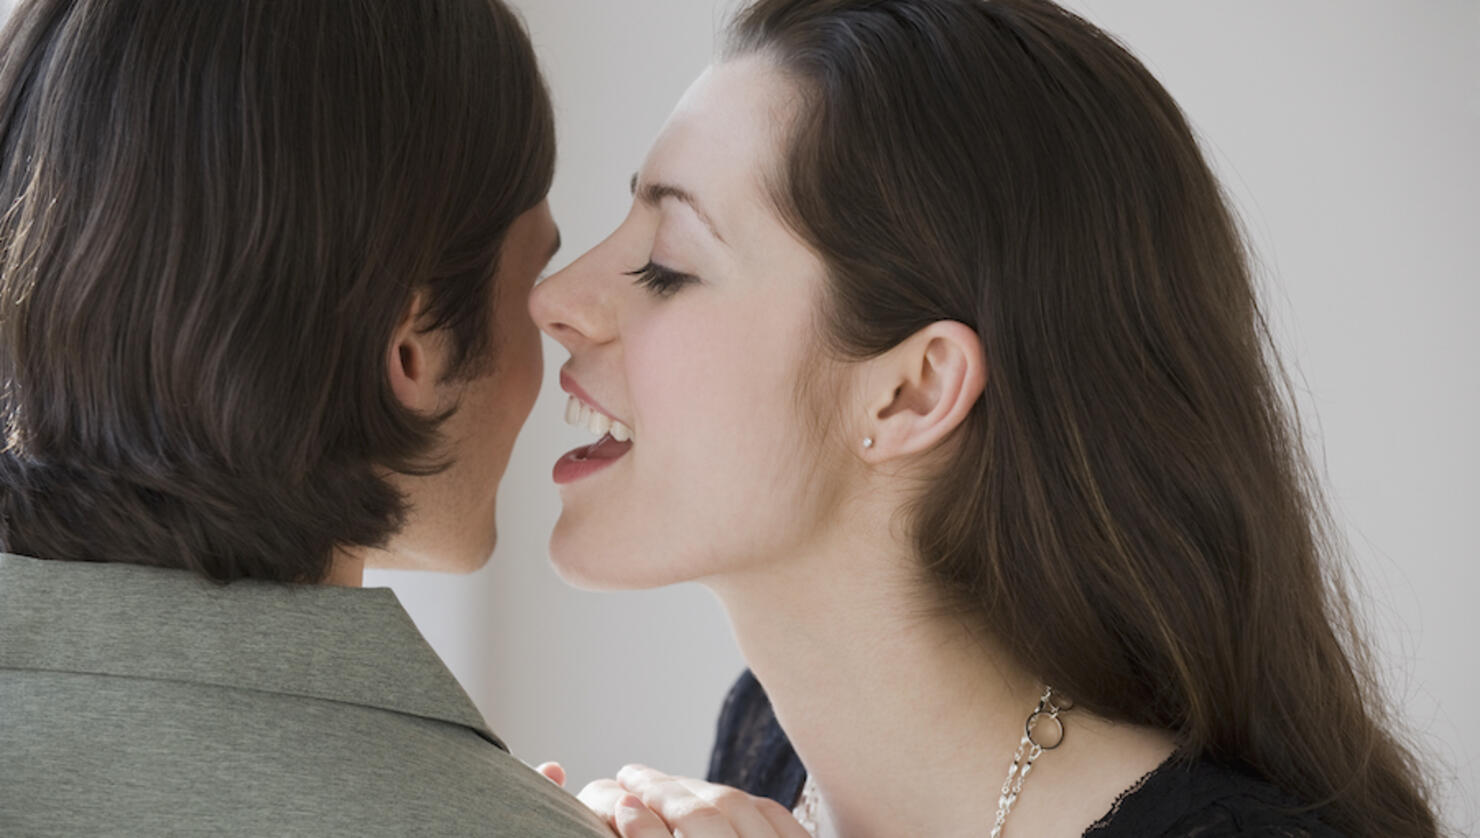 Woman whispering in boyfriend?s ear